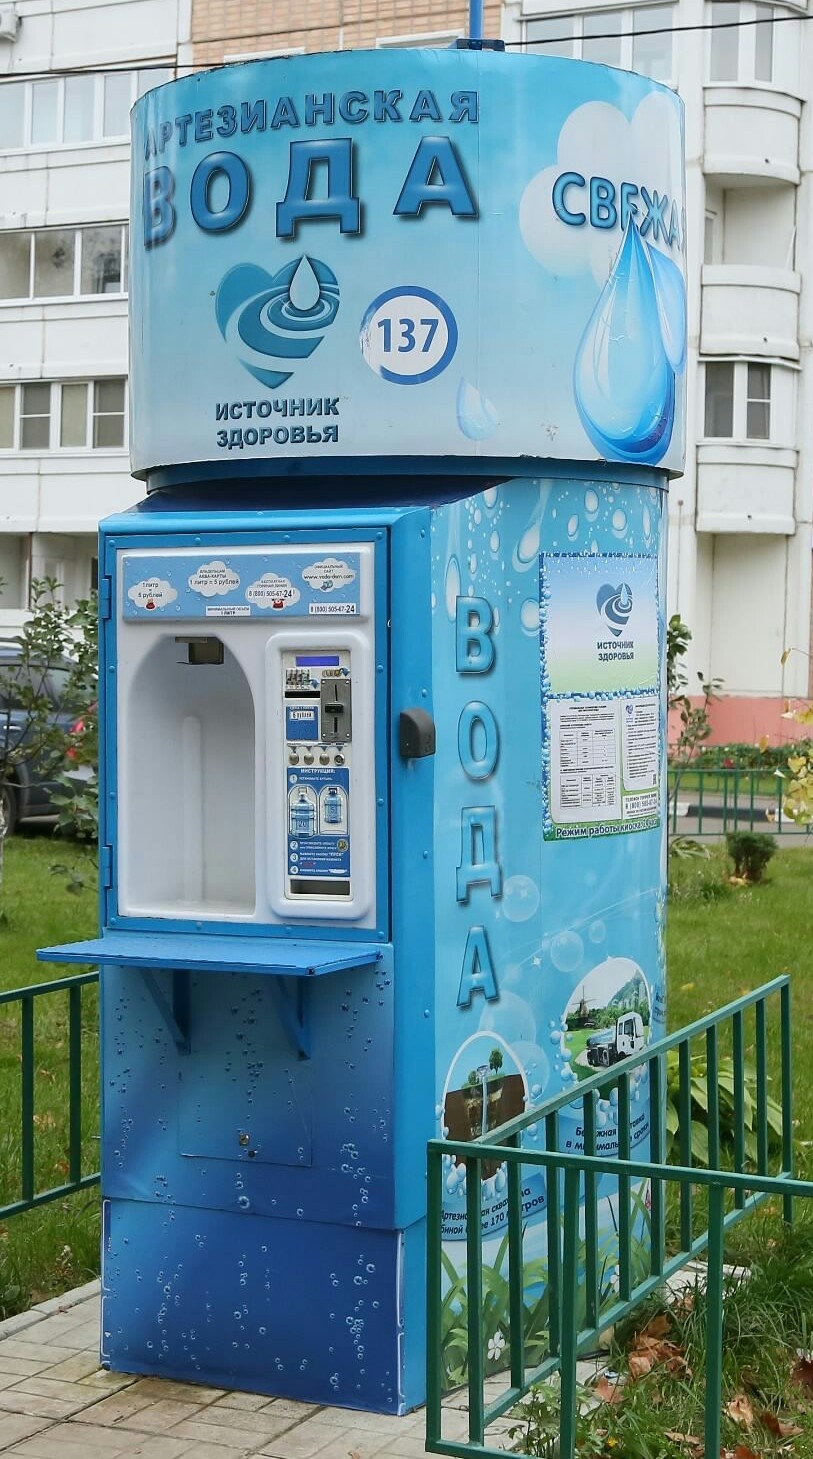 Продажа воды на улице в розлив. Автомат с водой. Аппарат для питьевой воды на улице. Аппарат артезианской воды. Аппараты для питьевой воды на розлив.